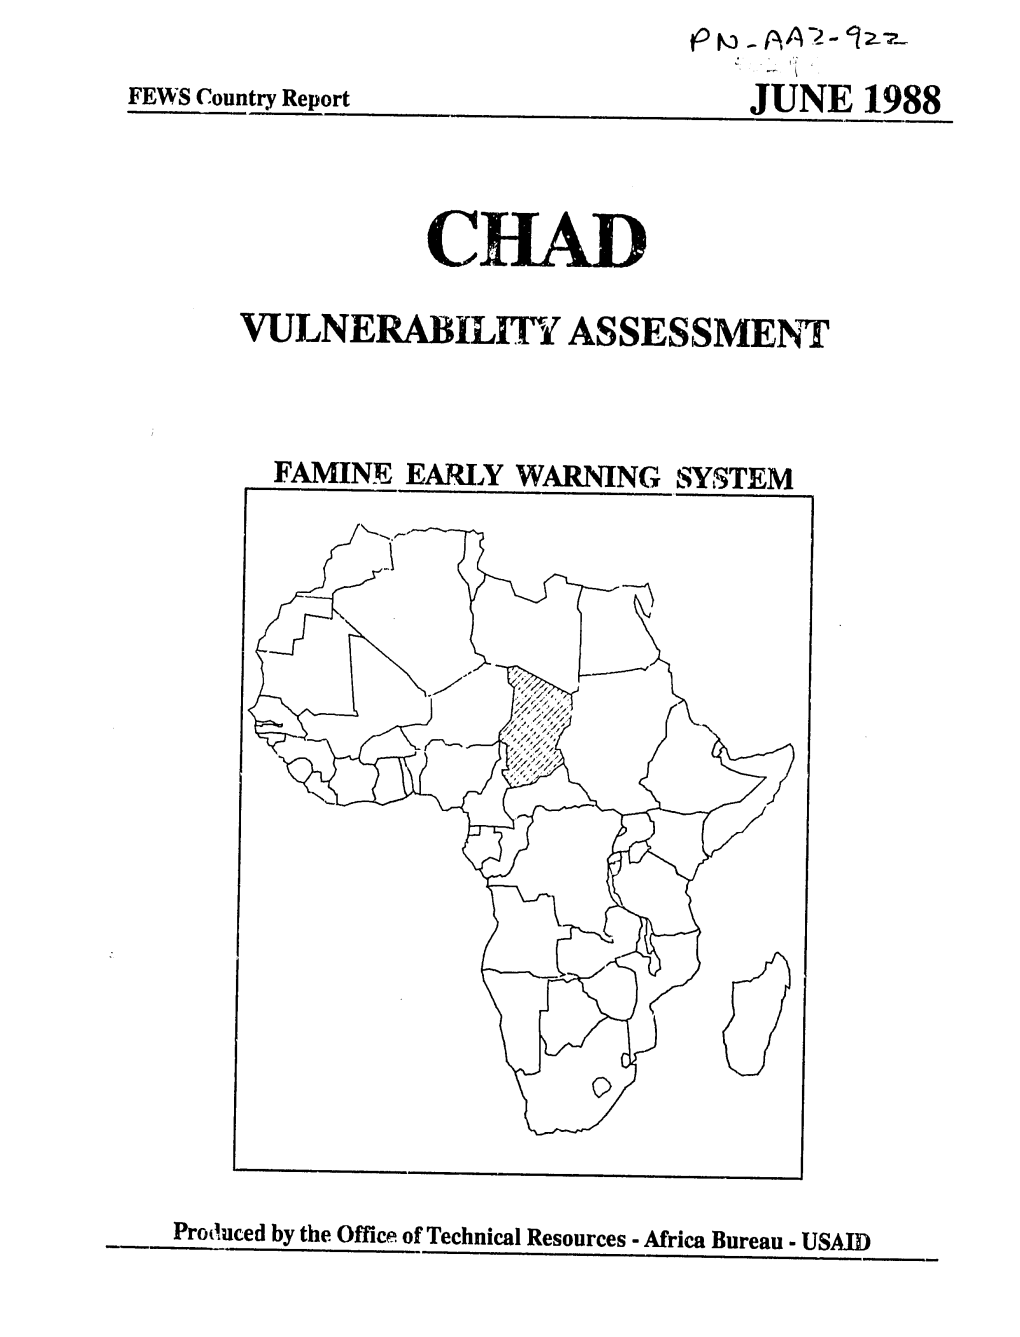 June 1988 Vulnerability Assessment